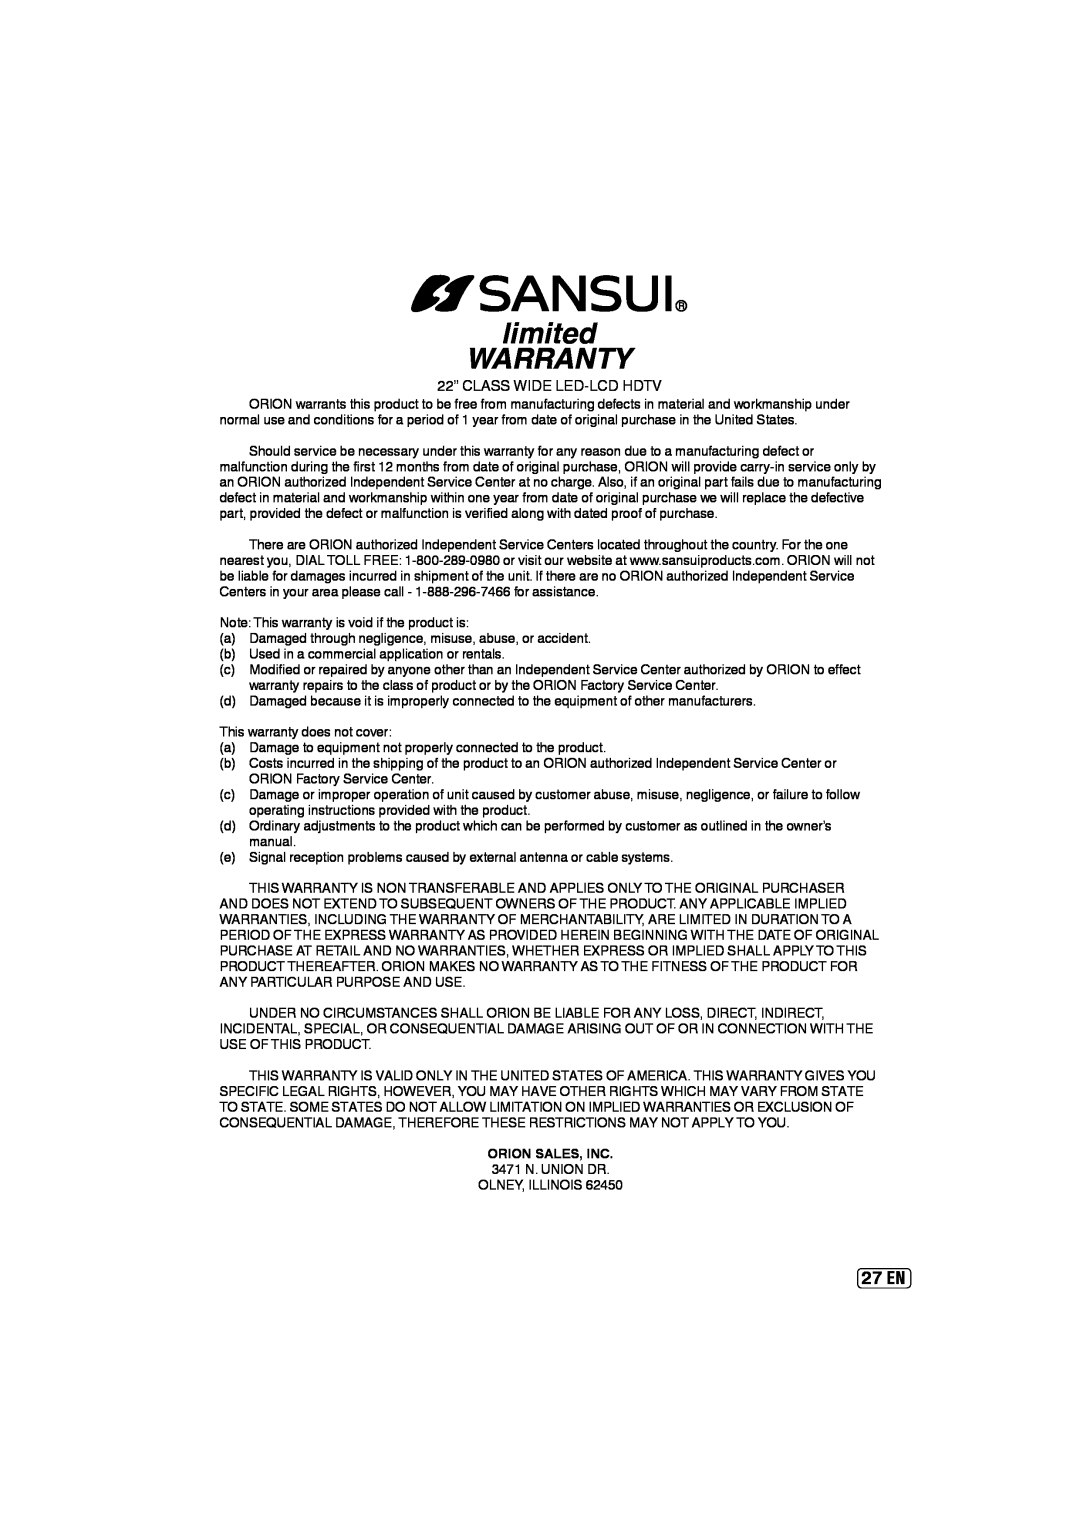 Sansui SLED2237 owner manual 27 EN, limited WARRANTY, Orion Sales, Inc 